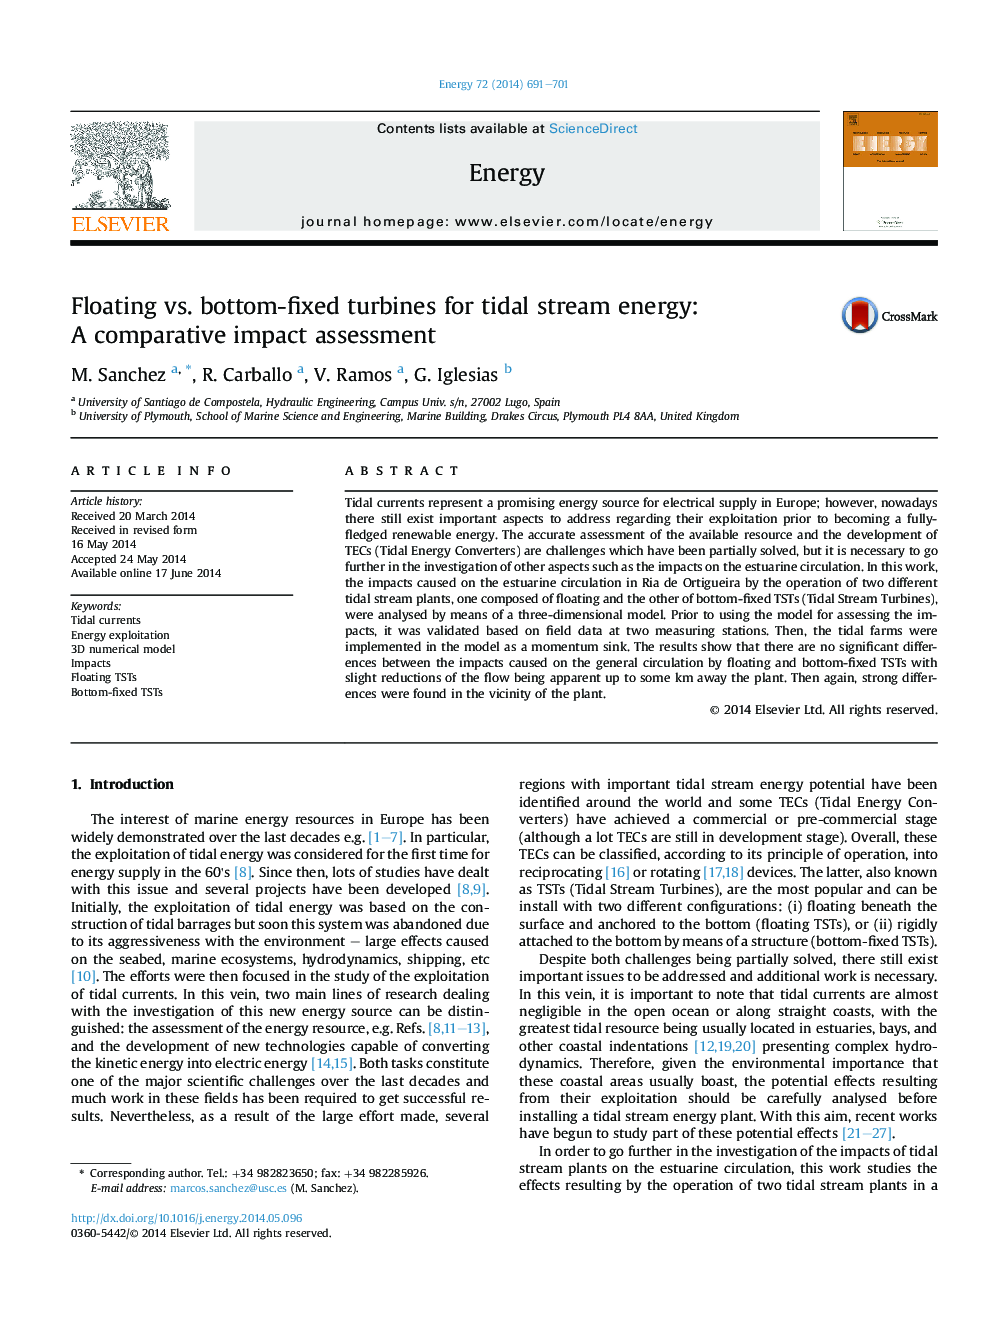 توربین های شناور در مقابل توربین های پایه ثابت برای انرژی جریان های جزر و مد: یک ارزیابی تاثیر مقایسه ای 